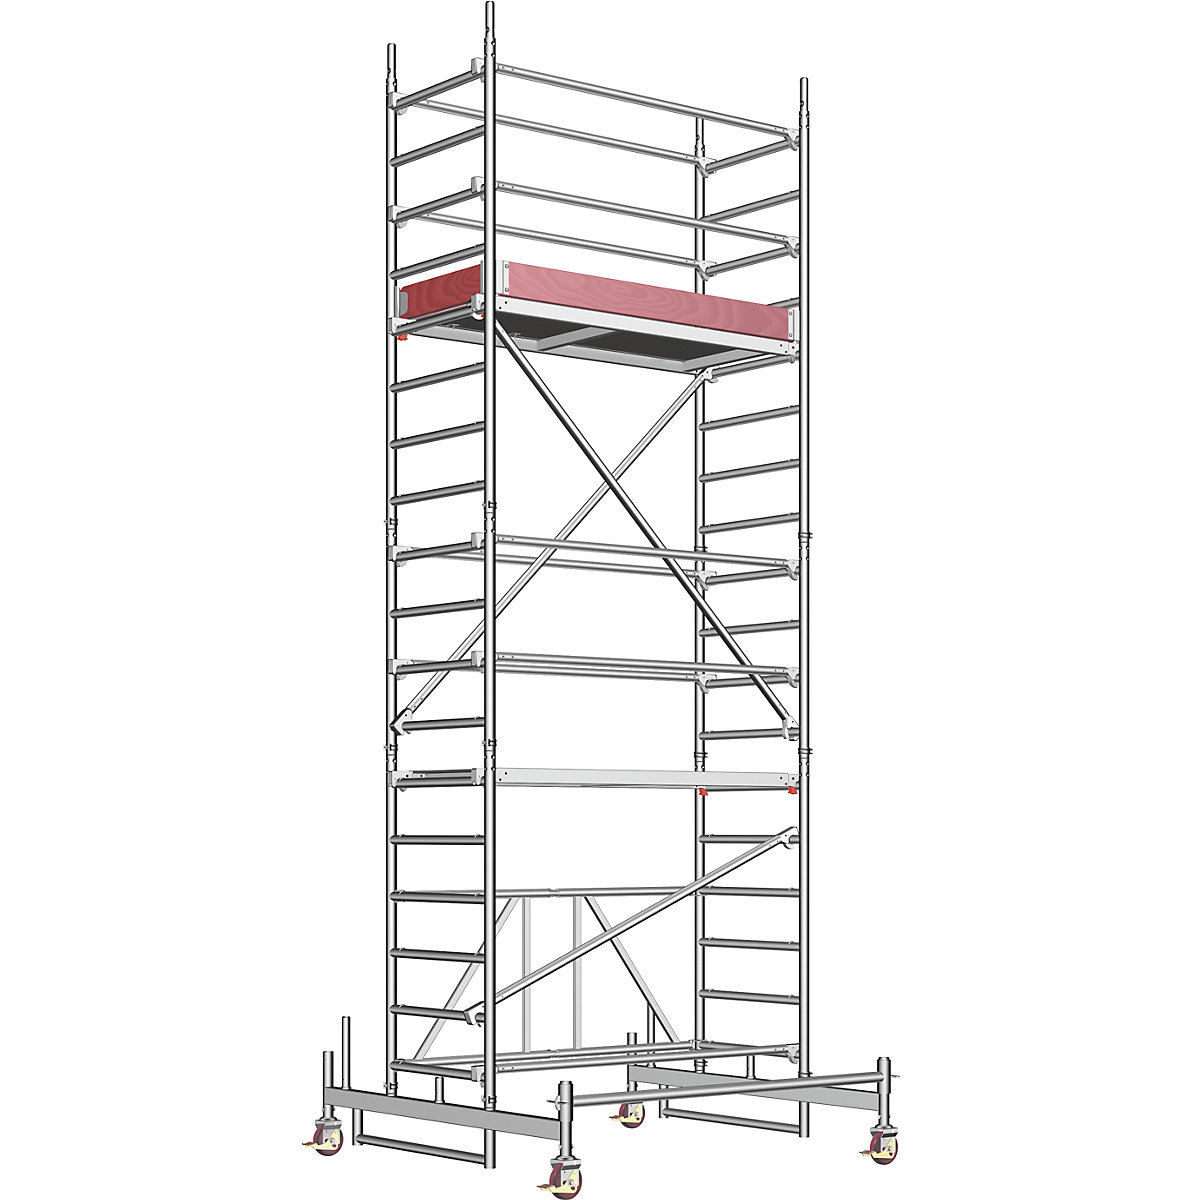 Trabattello pieghevole in alluminio ZIFA – Layher, piattaforma 1,80 x 0,75 m, altezza del trabattello 4,98 m-8